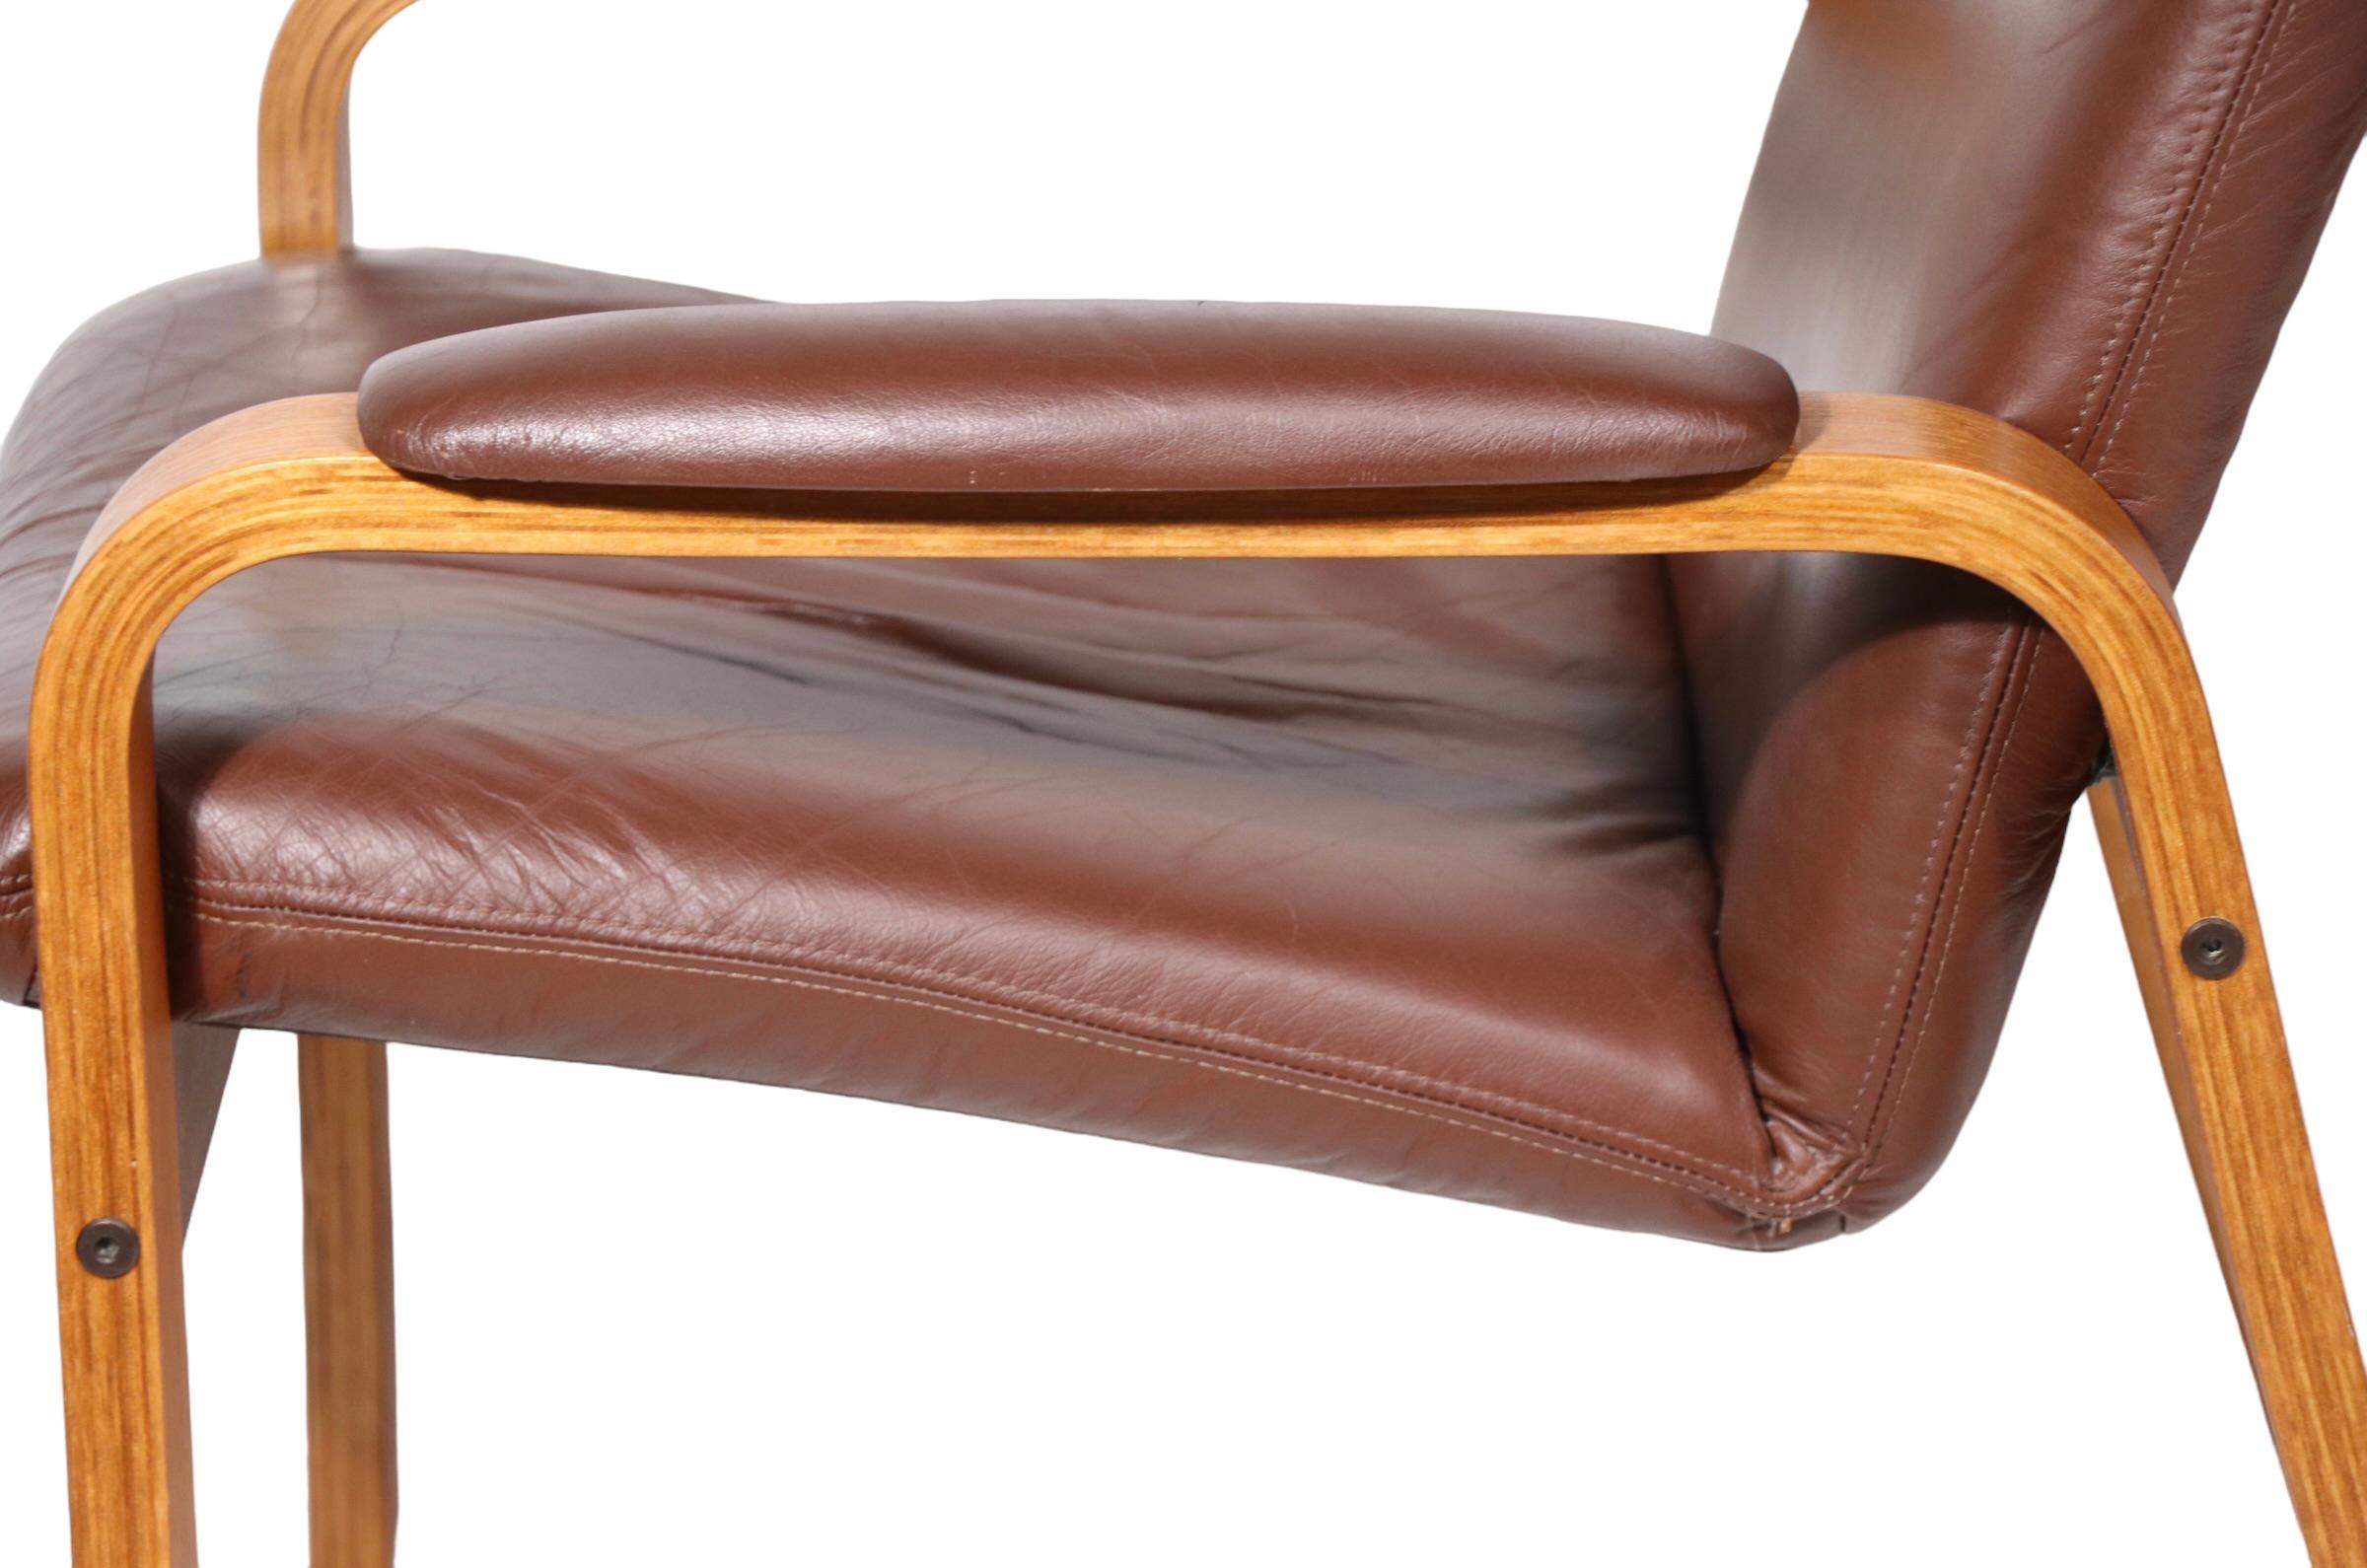 Exceptionnelle paire de fauteuils de salon en bois courbé apparent, avec sièges et coussins de dossier en cuir souple marron. Les chaises ont été fabriquées en Norvège par Ekorness, vers les années 1960/1970.  Les deux sont en très bon état, propres